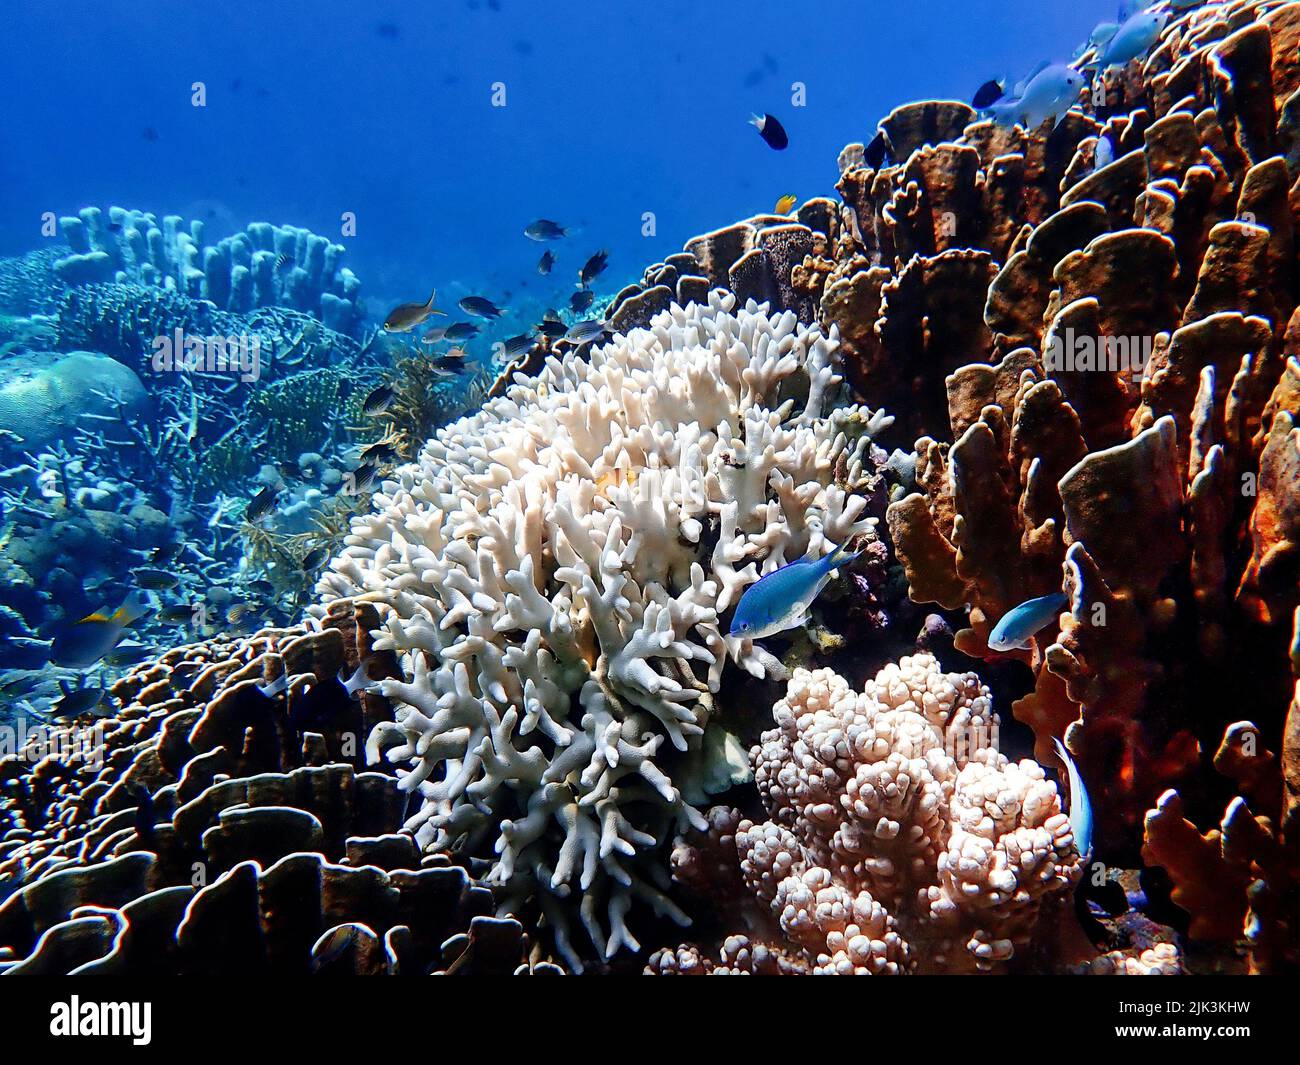 Indonesia Sumbawa - colorido arrecife de coral con peces tropicales Foto de stock